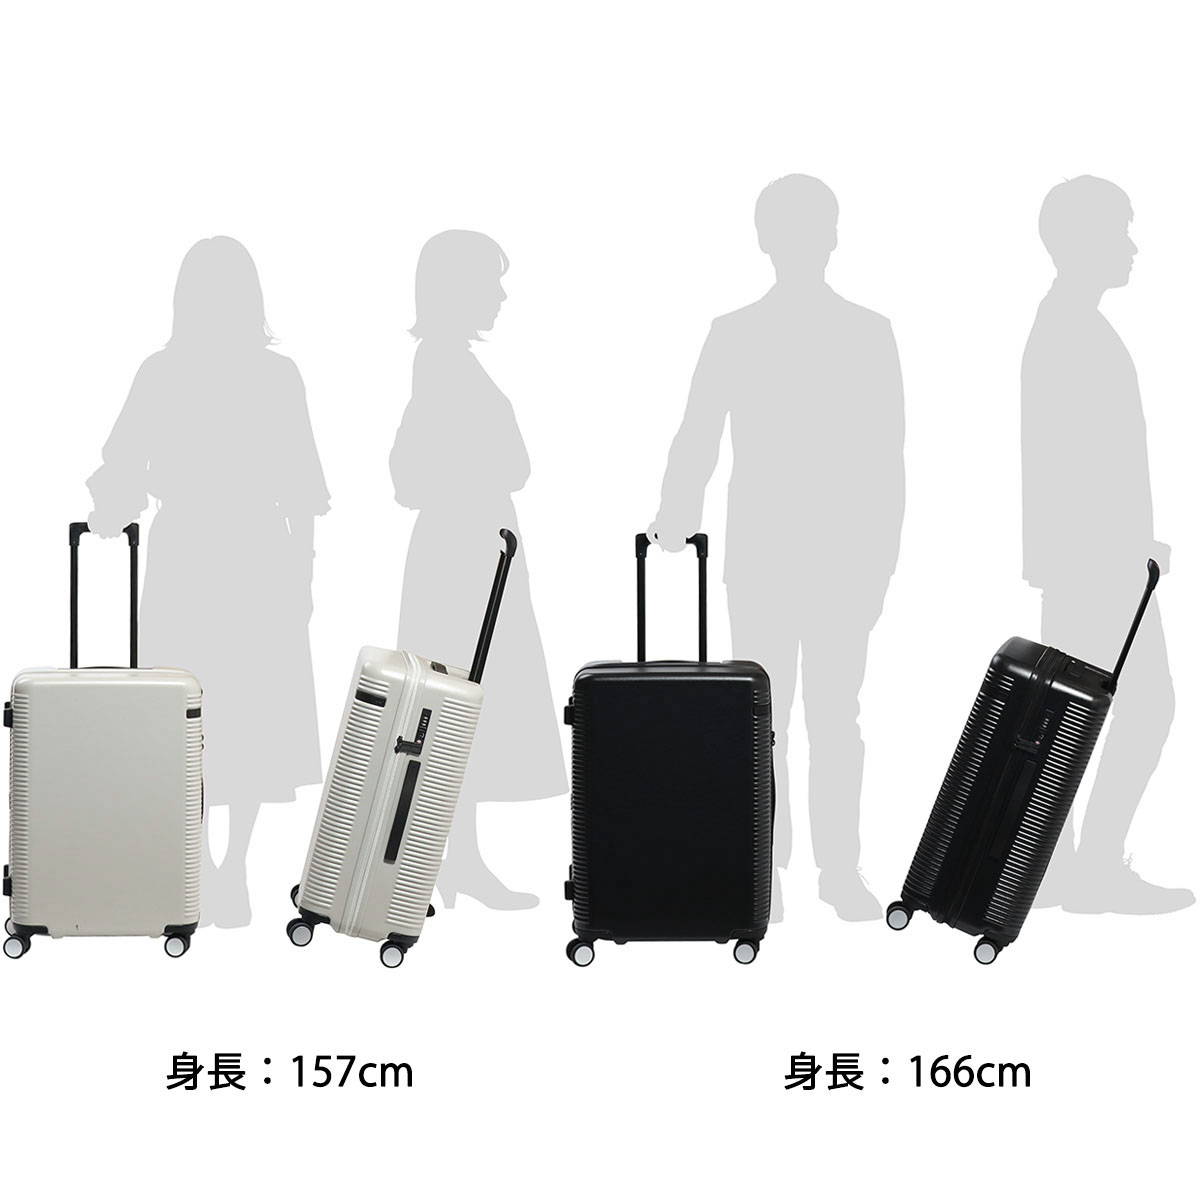 ace.TOKYO スーツケース ... : 日用品雑貨 : セール40%OFFエース 高評価好評